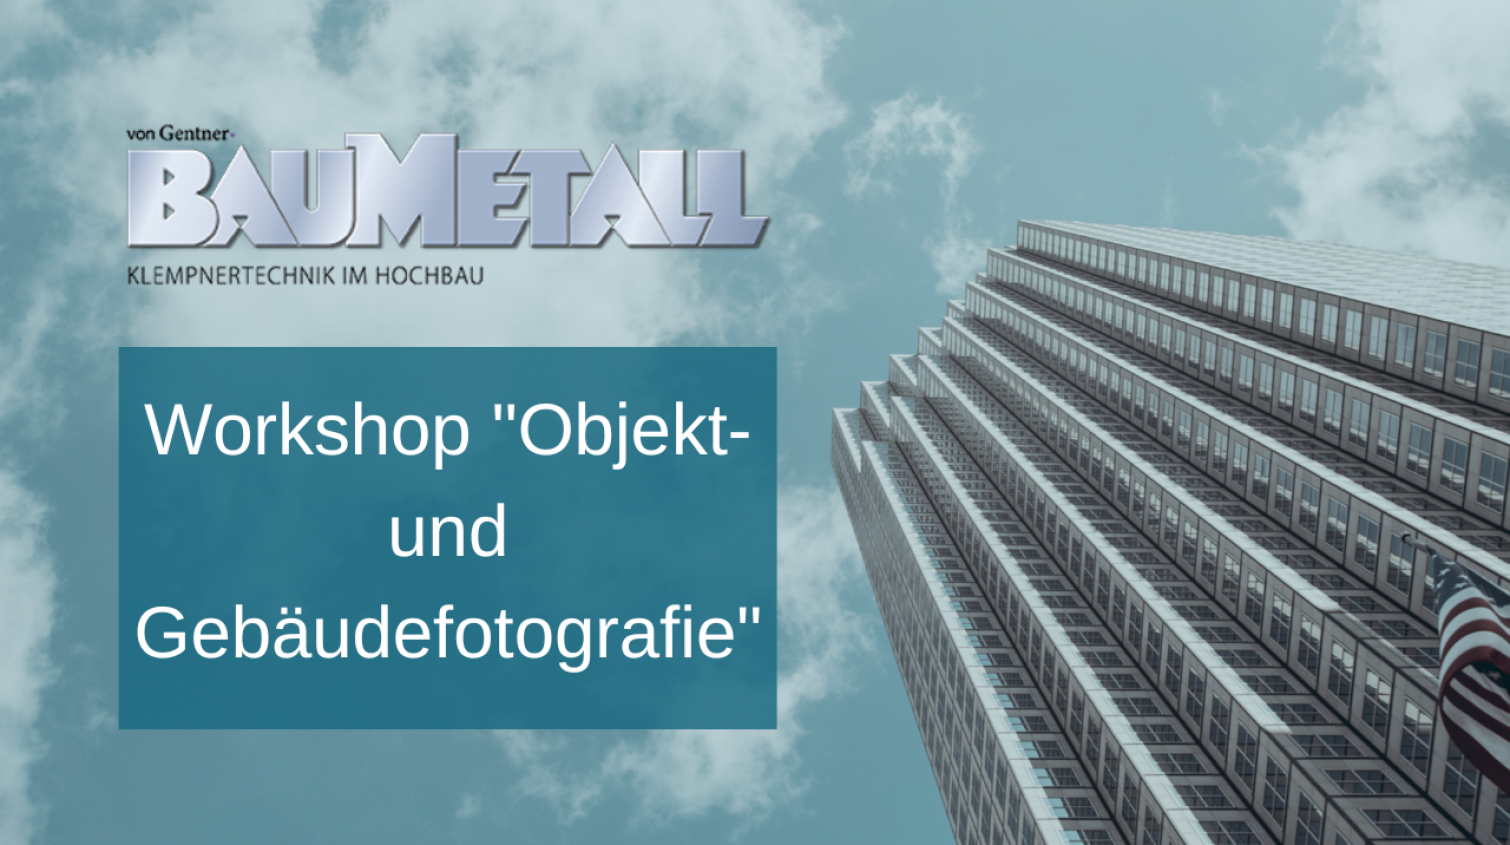 Workshop “Gebäude- und Objektfotografie”